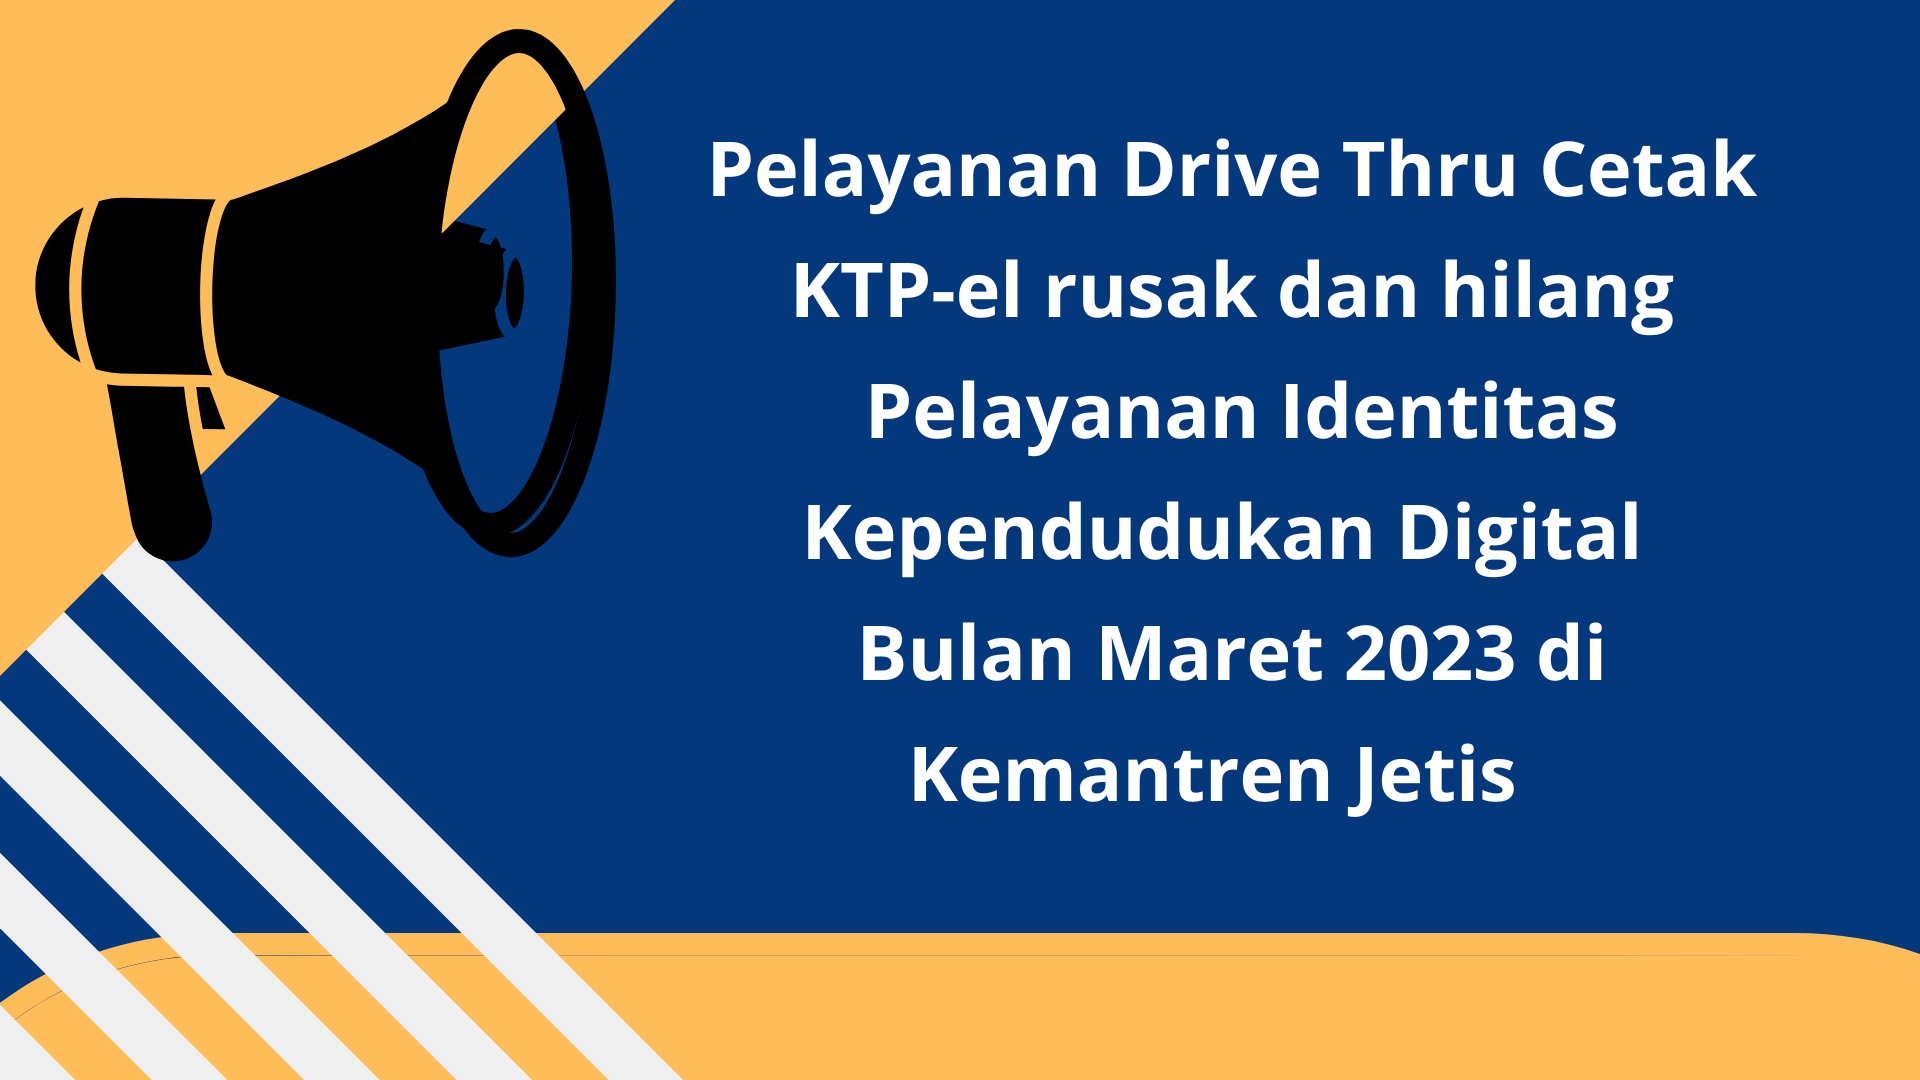 Pelayanan Drive Thru Cetak KTP-el dan Identitas Kependuudkan Digital Bulan Maret 2023 di Kemantren Jetis